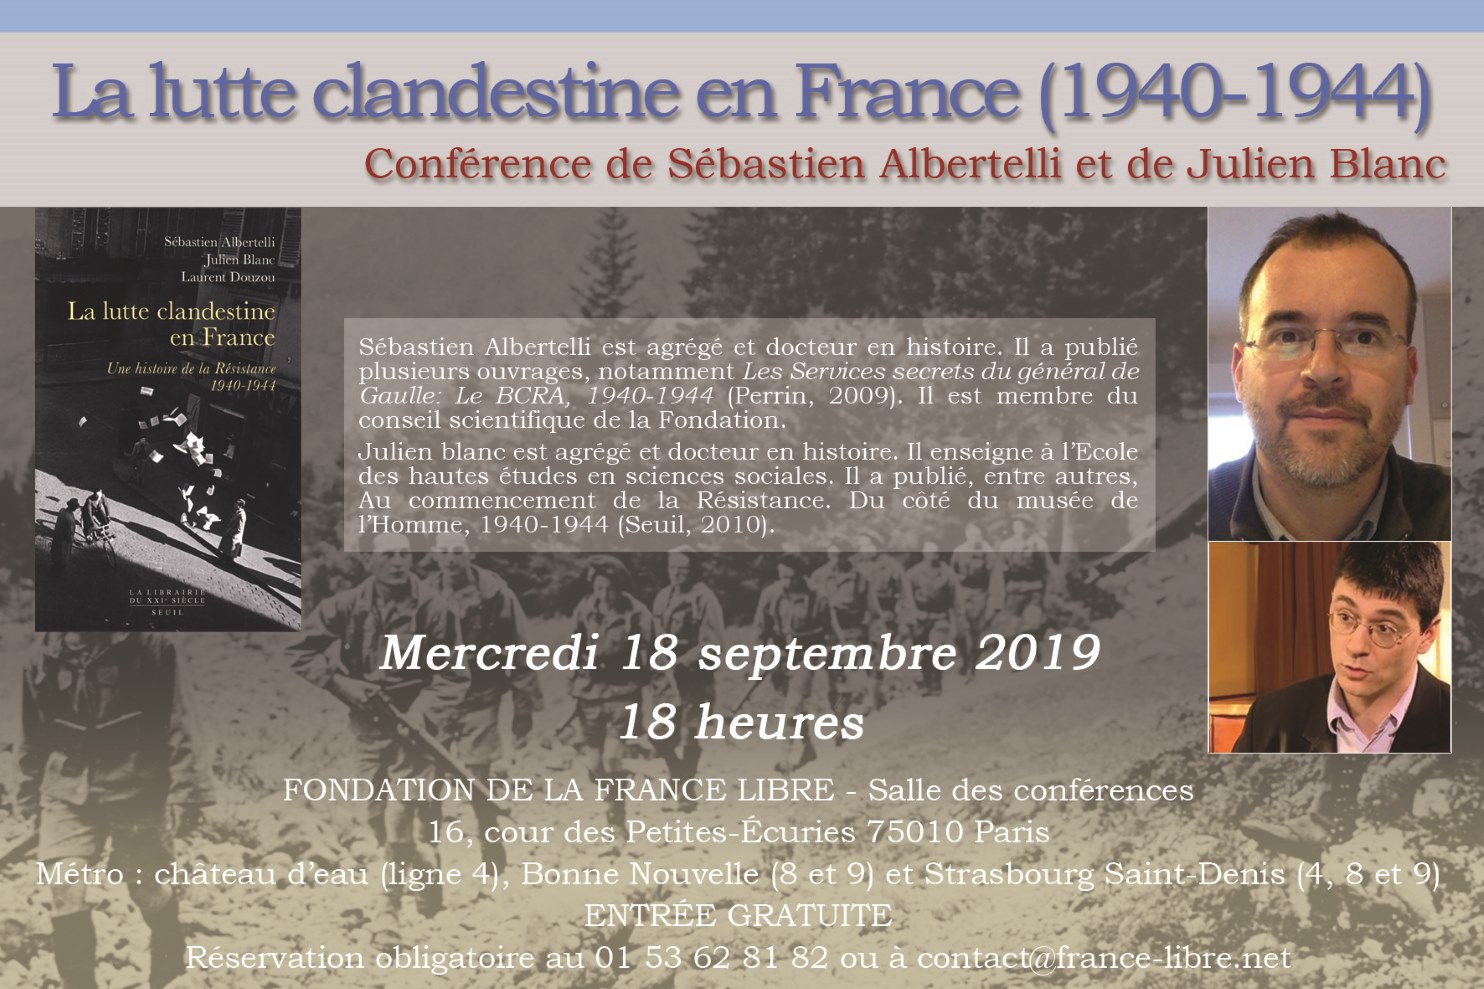 La lutte clandestine en France entre 1940 et 1944